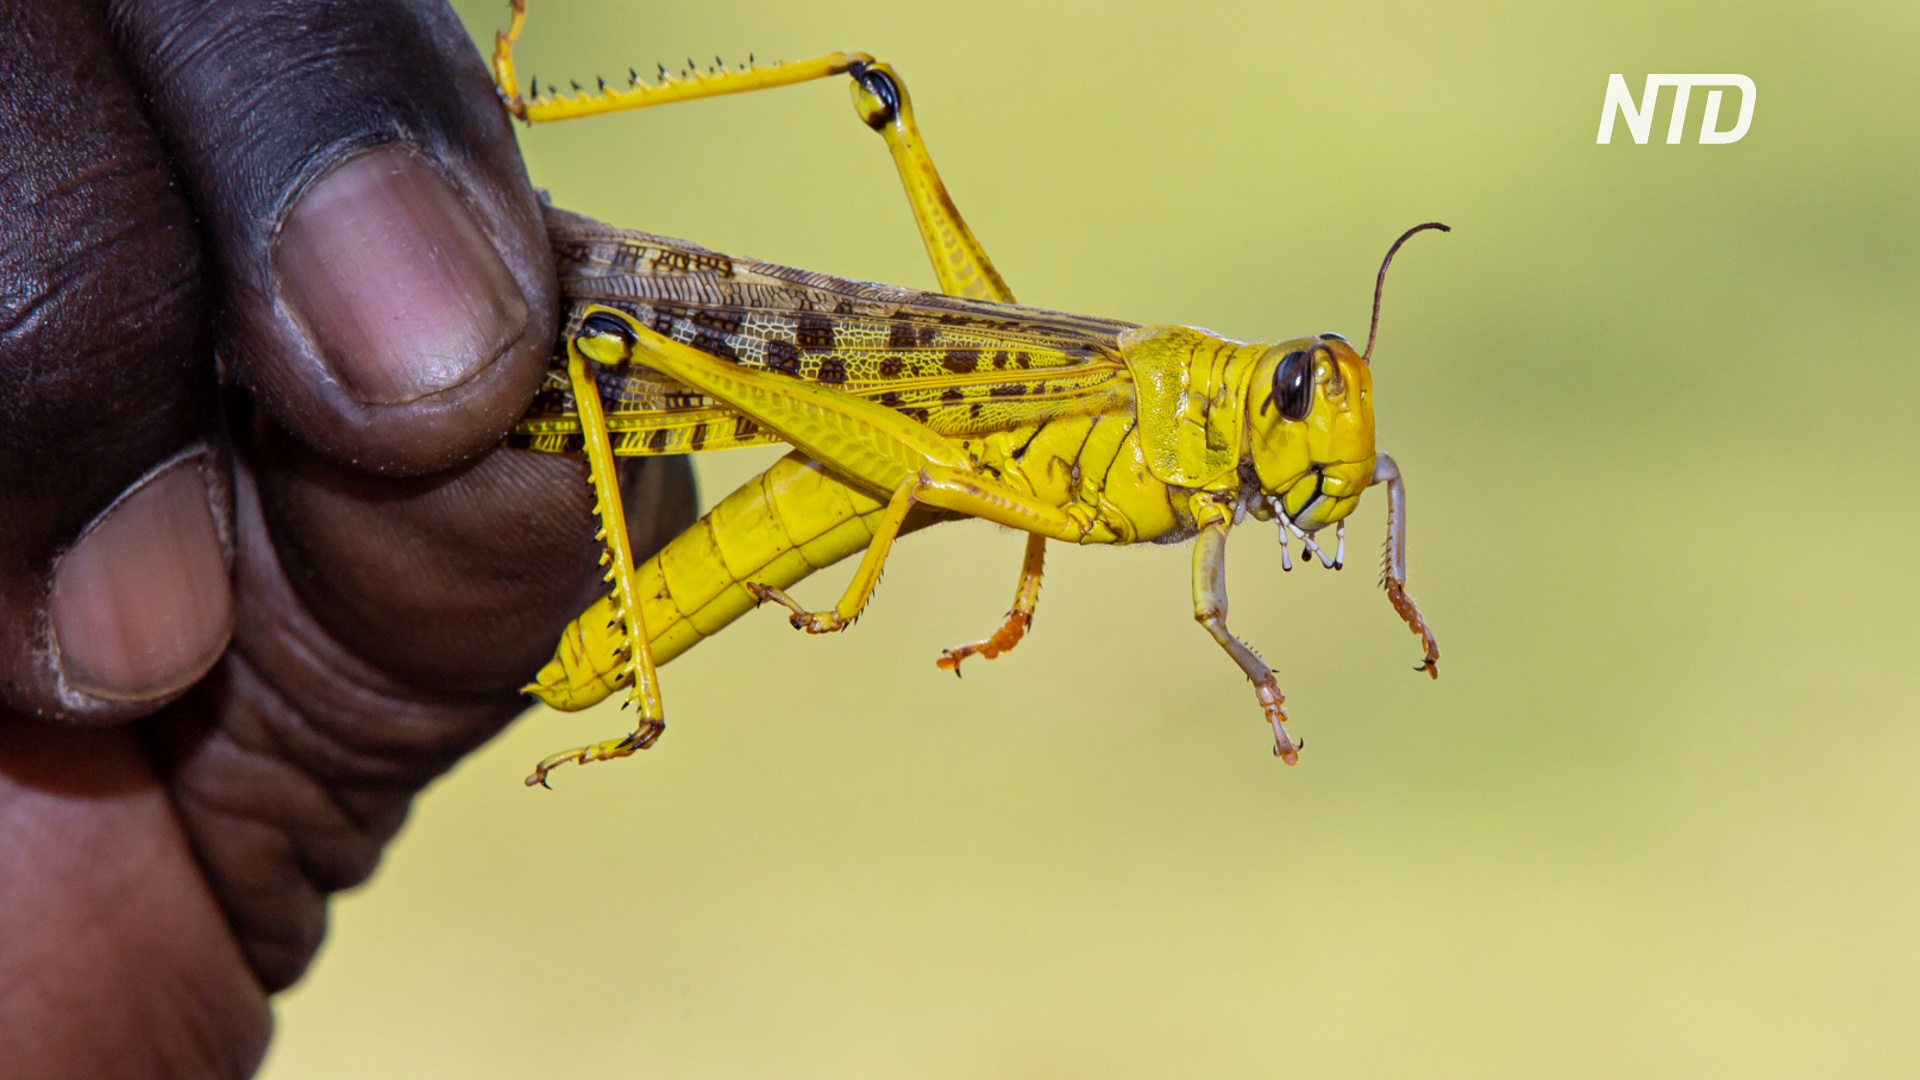 Отпор саранче: в Кении корма и удобрения делают из насекомых